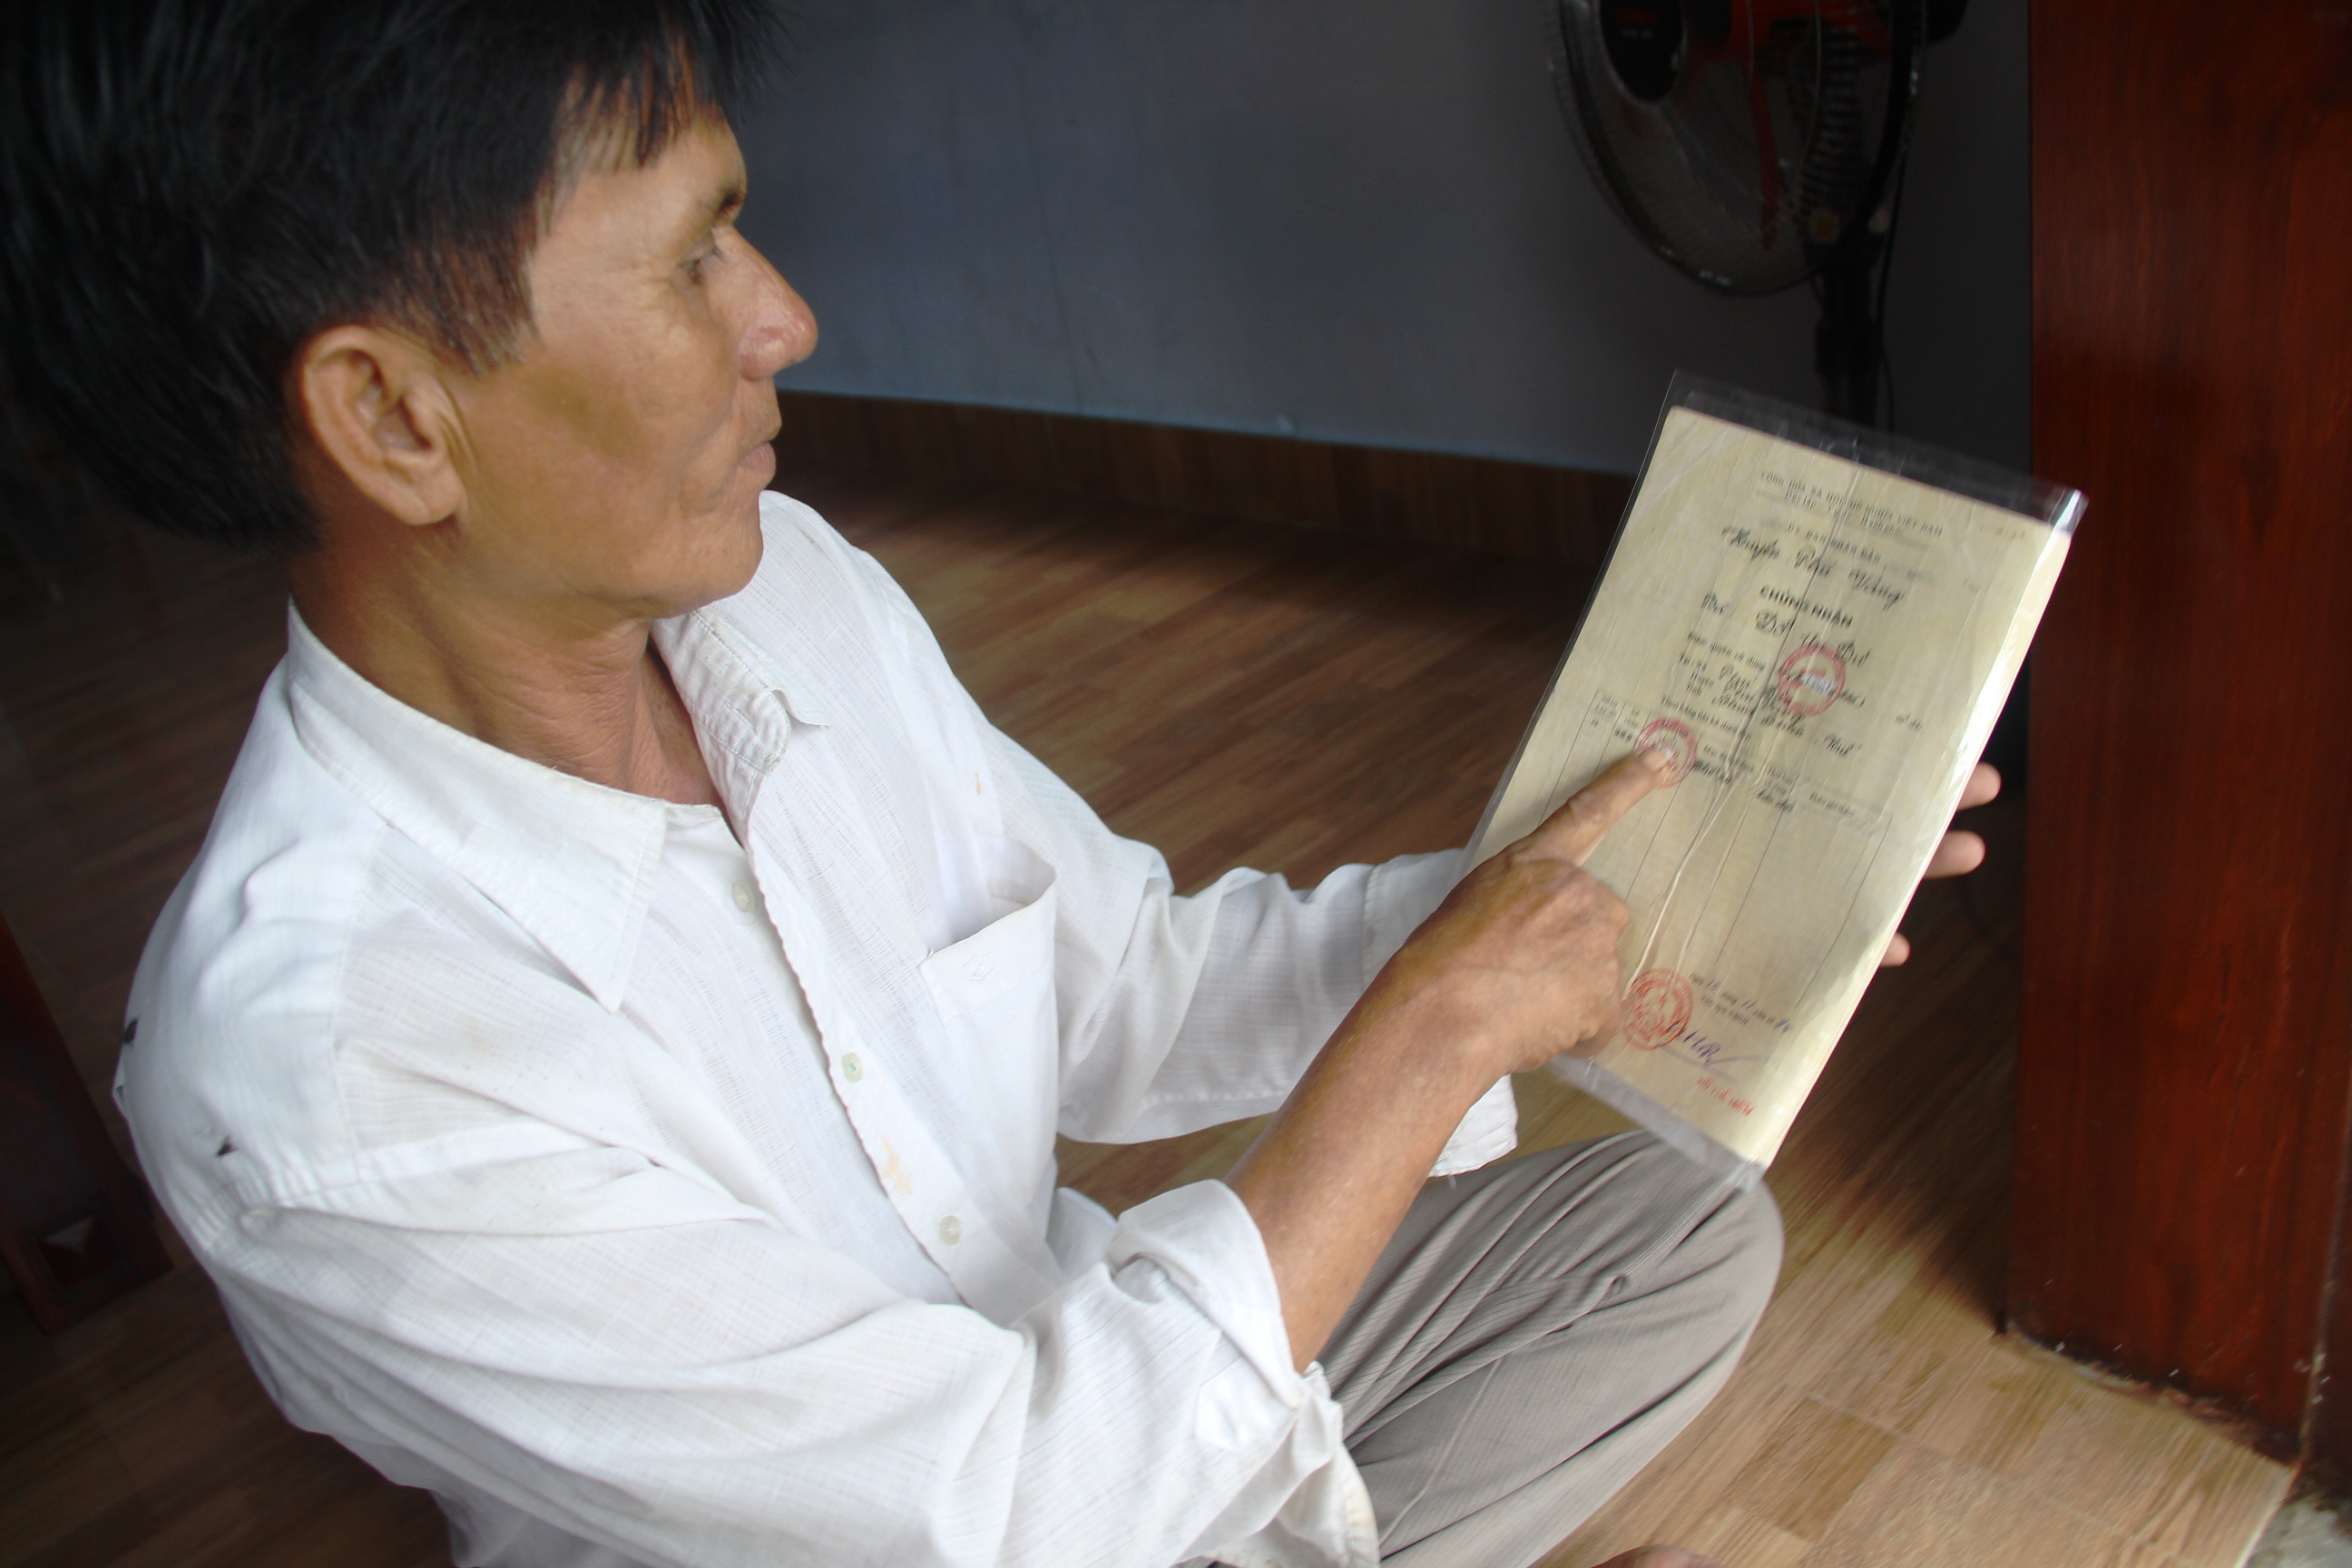 Ông Trần Tuất ở xã Phú Diên, huyện Phú Vang (Thừa Thiên - Huế) với “sổ đỏ” bị tẩy xóa, chỉnh sửa diện tích đất - Ảnh: NHẬT LINH